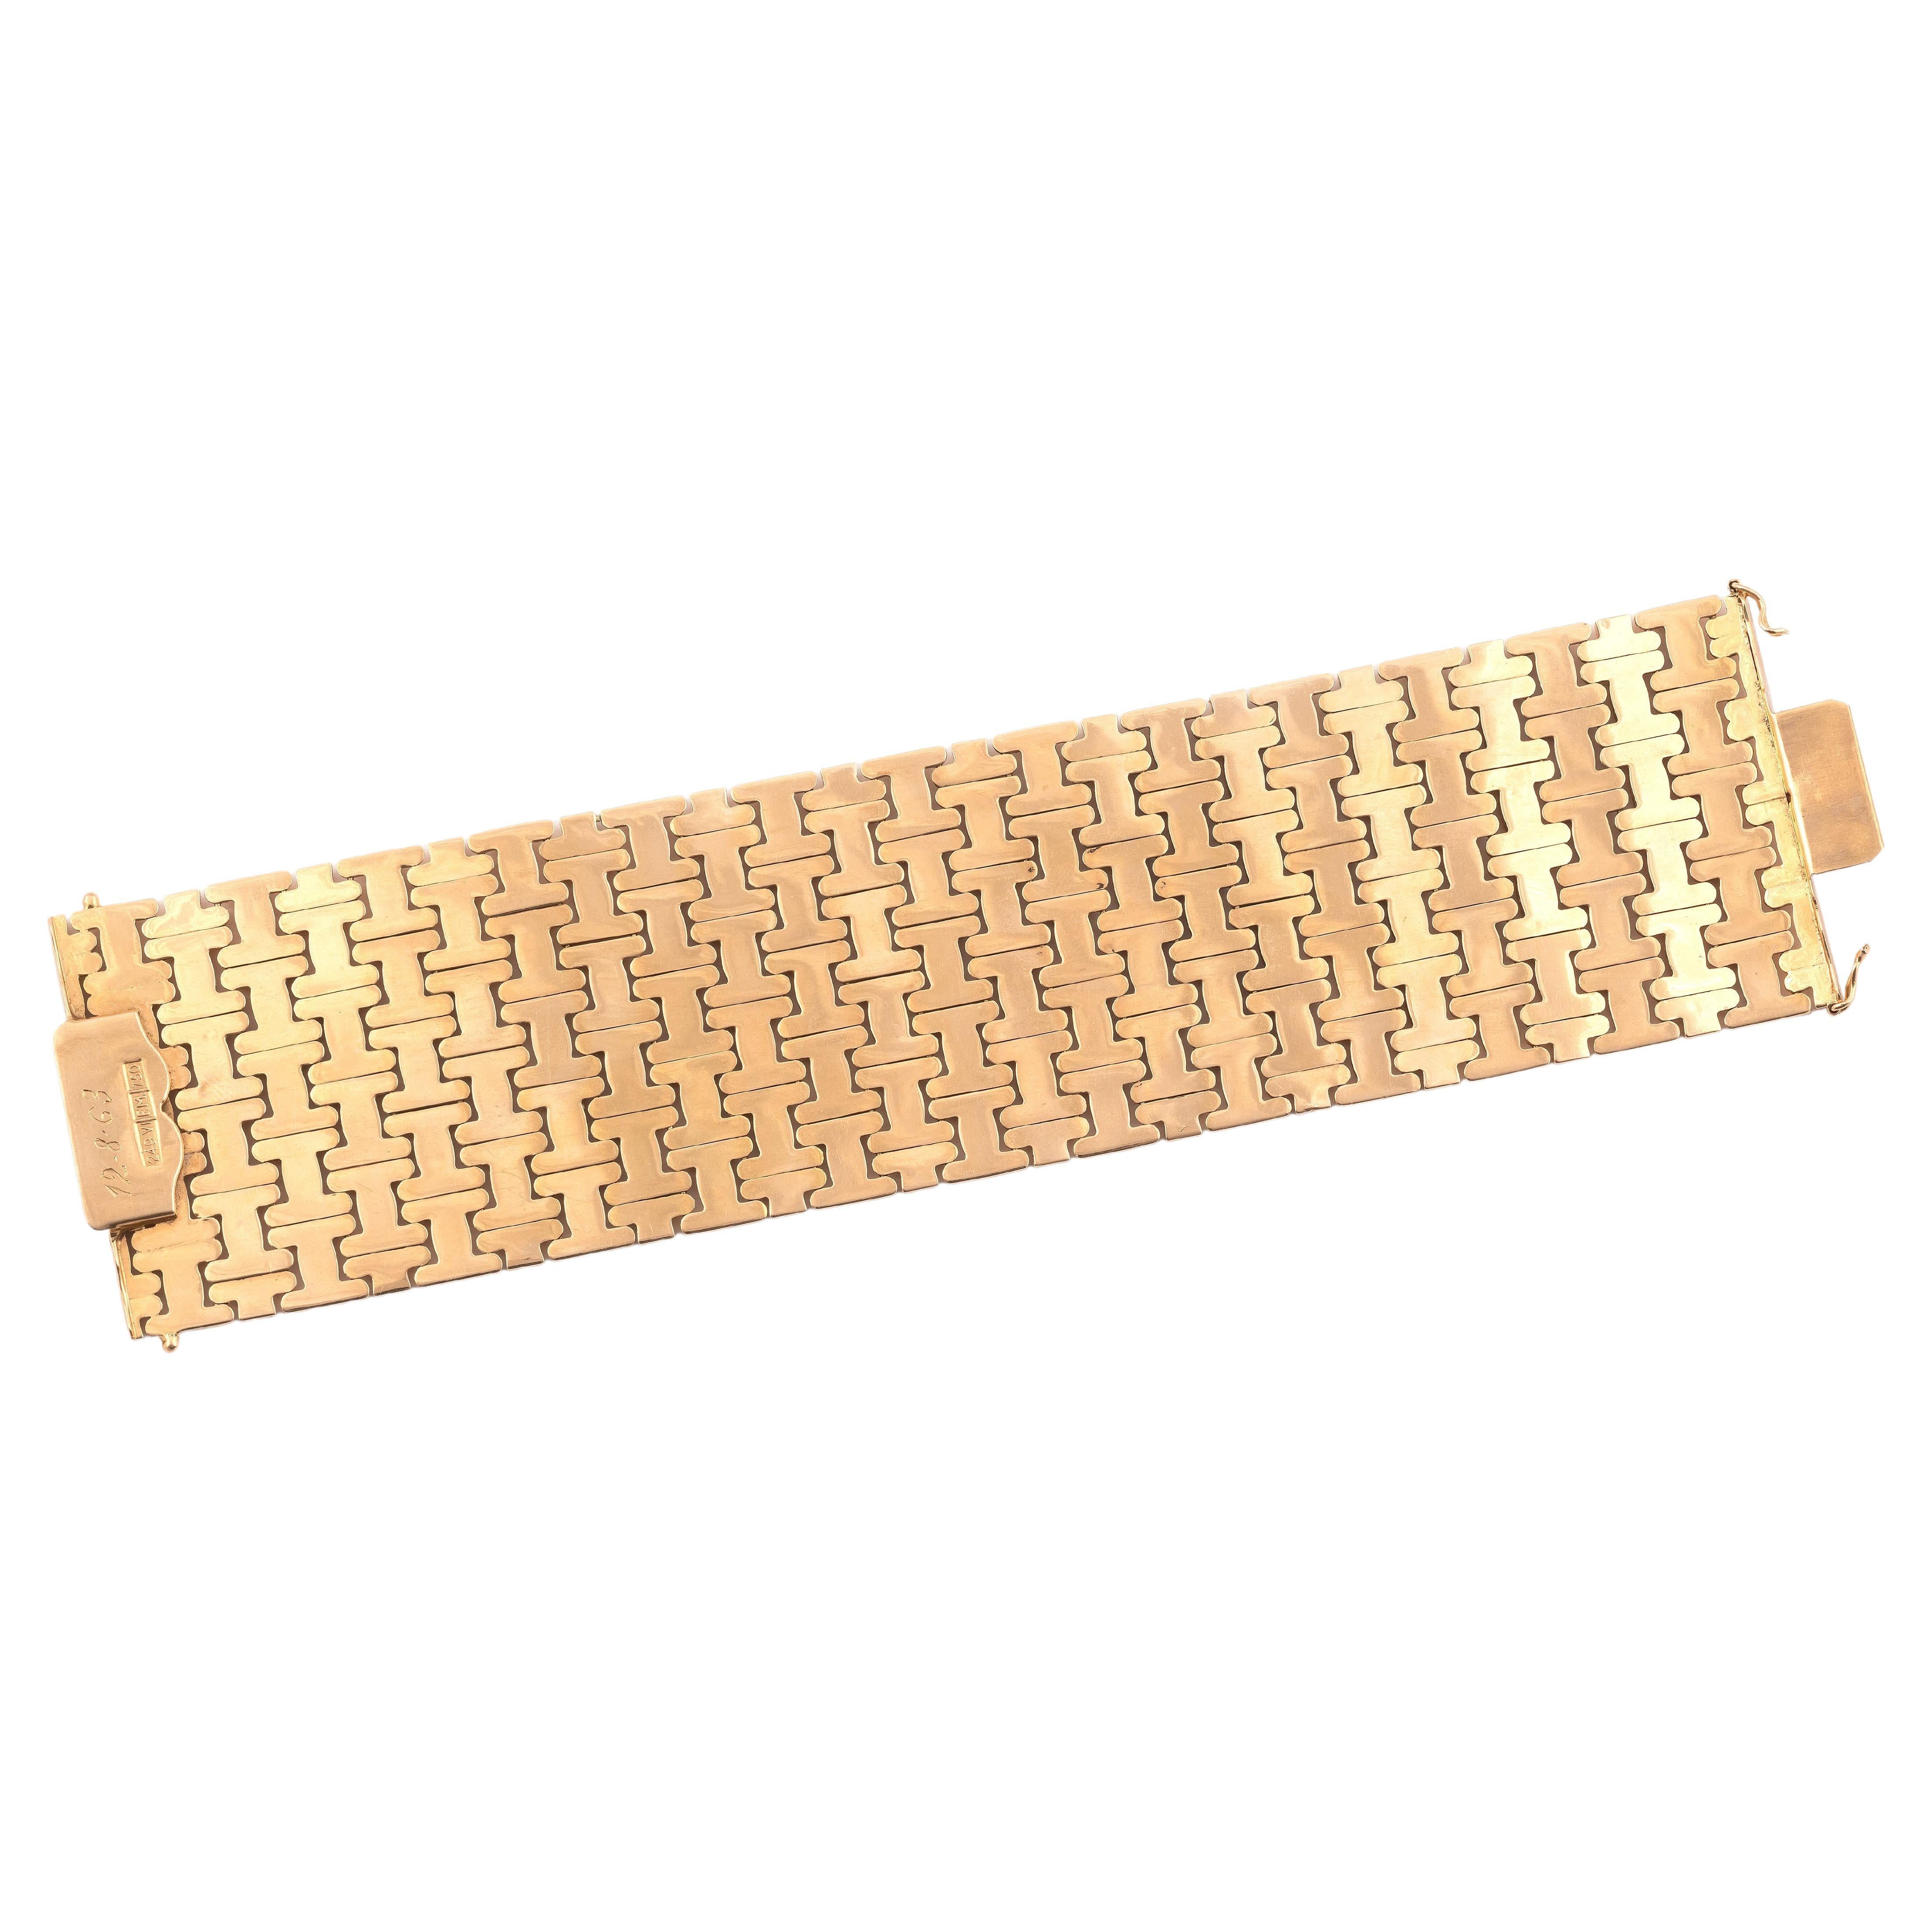 Un bracelet vintage en or 18ct large conçu comme une série de panneaux géométriques, mesurant approximativement 20cm x 5cm, fait en or jaune, vers 1960, poinçonné or 18ct, italien, poids brut 97 grammes.

Ce bracelet vintage est en excellent état.